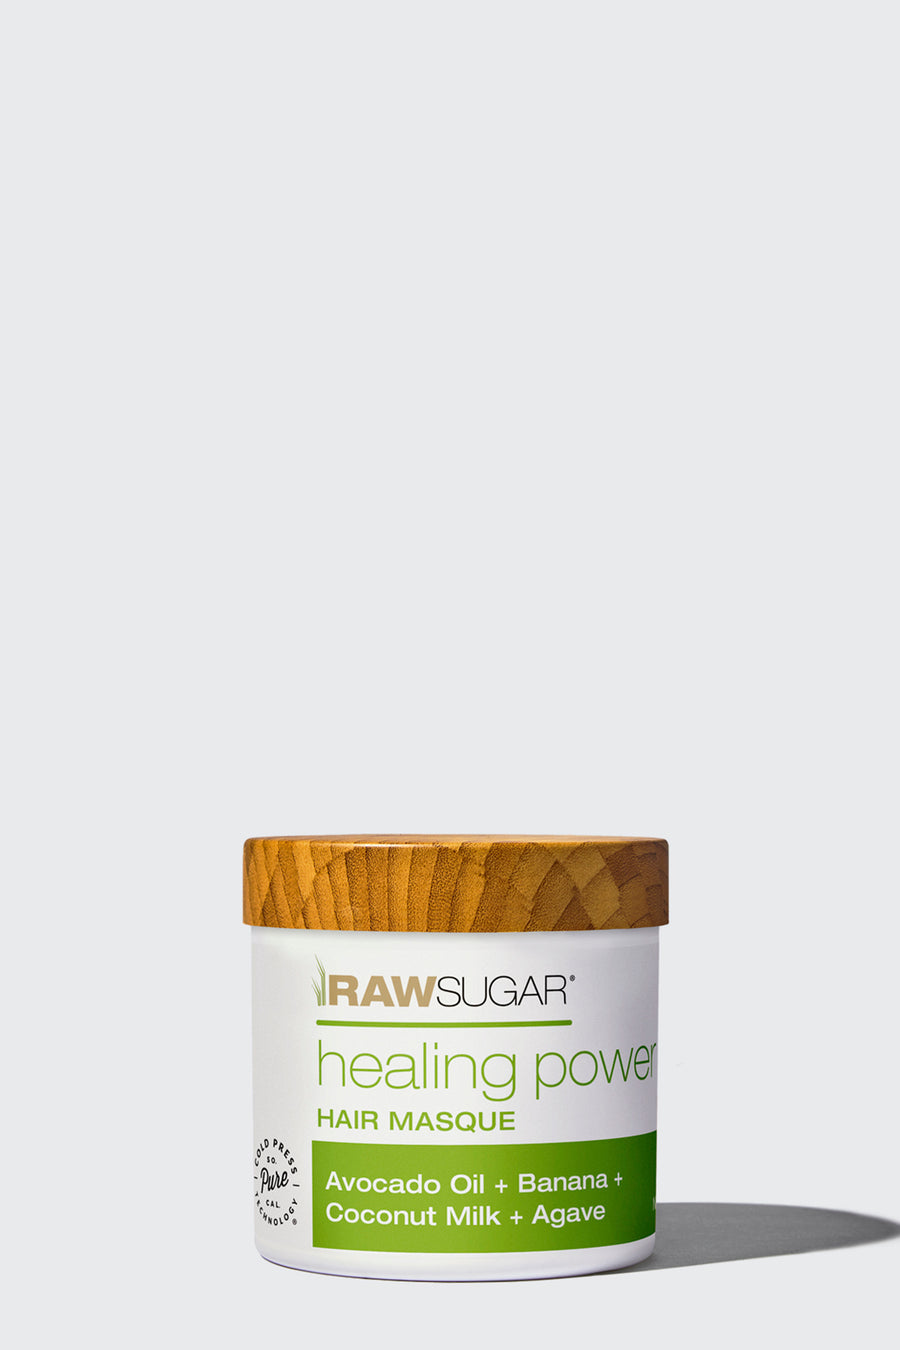 Healing Power Hair Masque | Avocado + Banana Oil + Coconut Milk + Agave | 2.5 oz